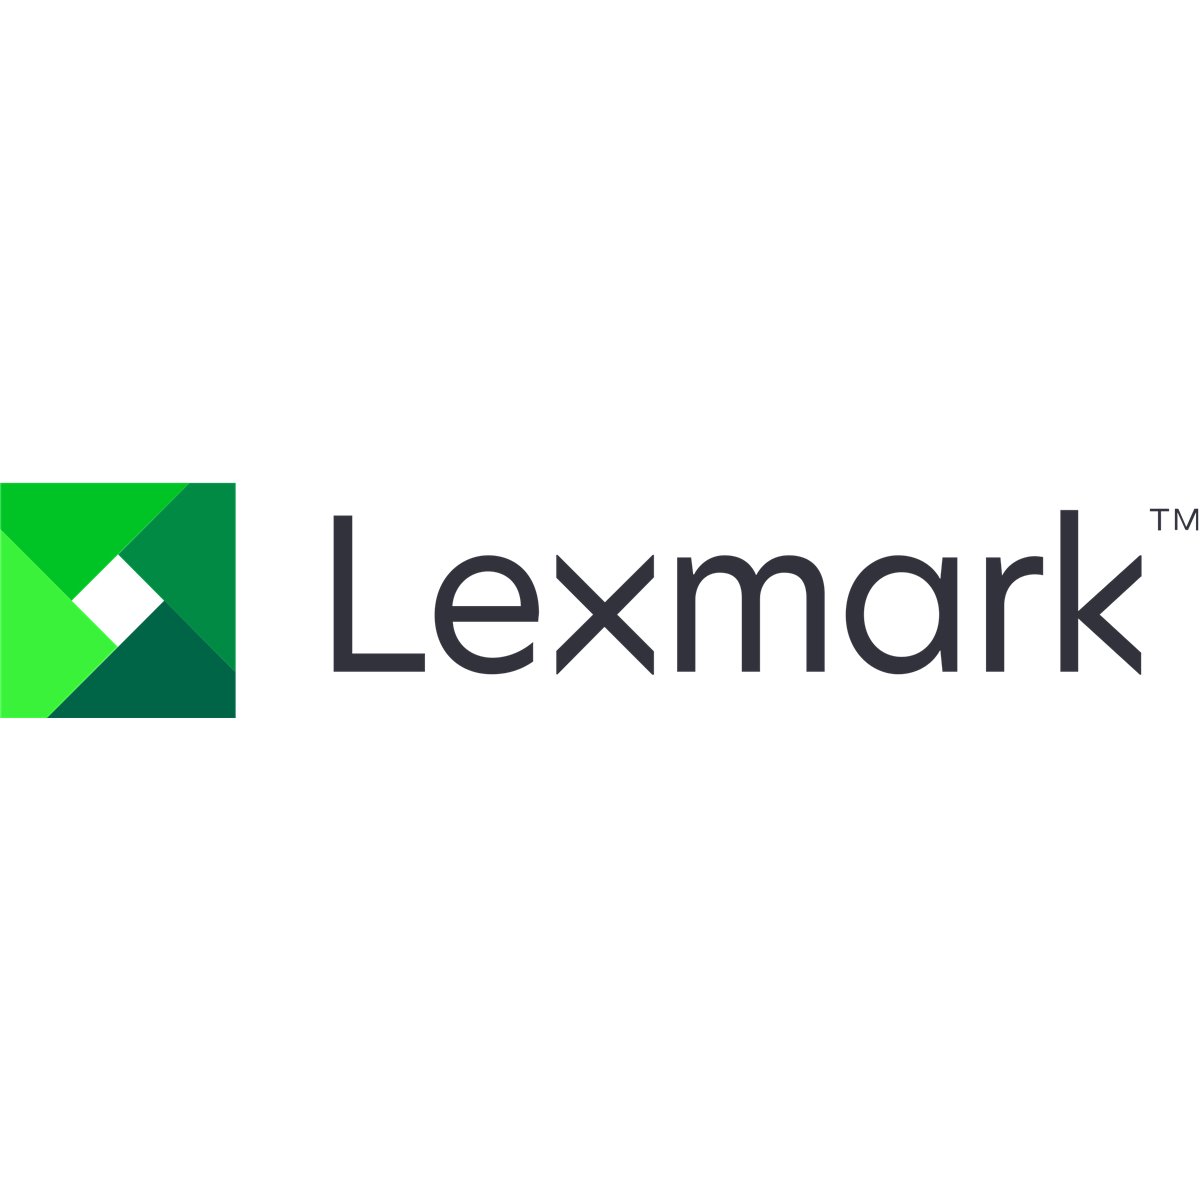 Lexmark Board 5 bin mailbox OPTION